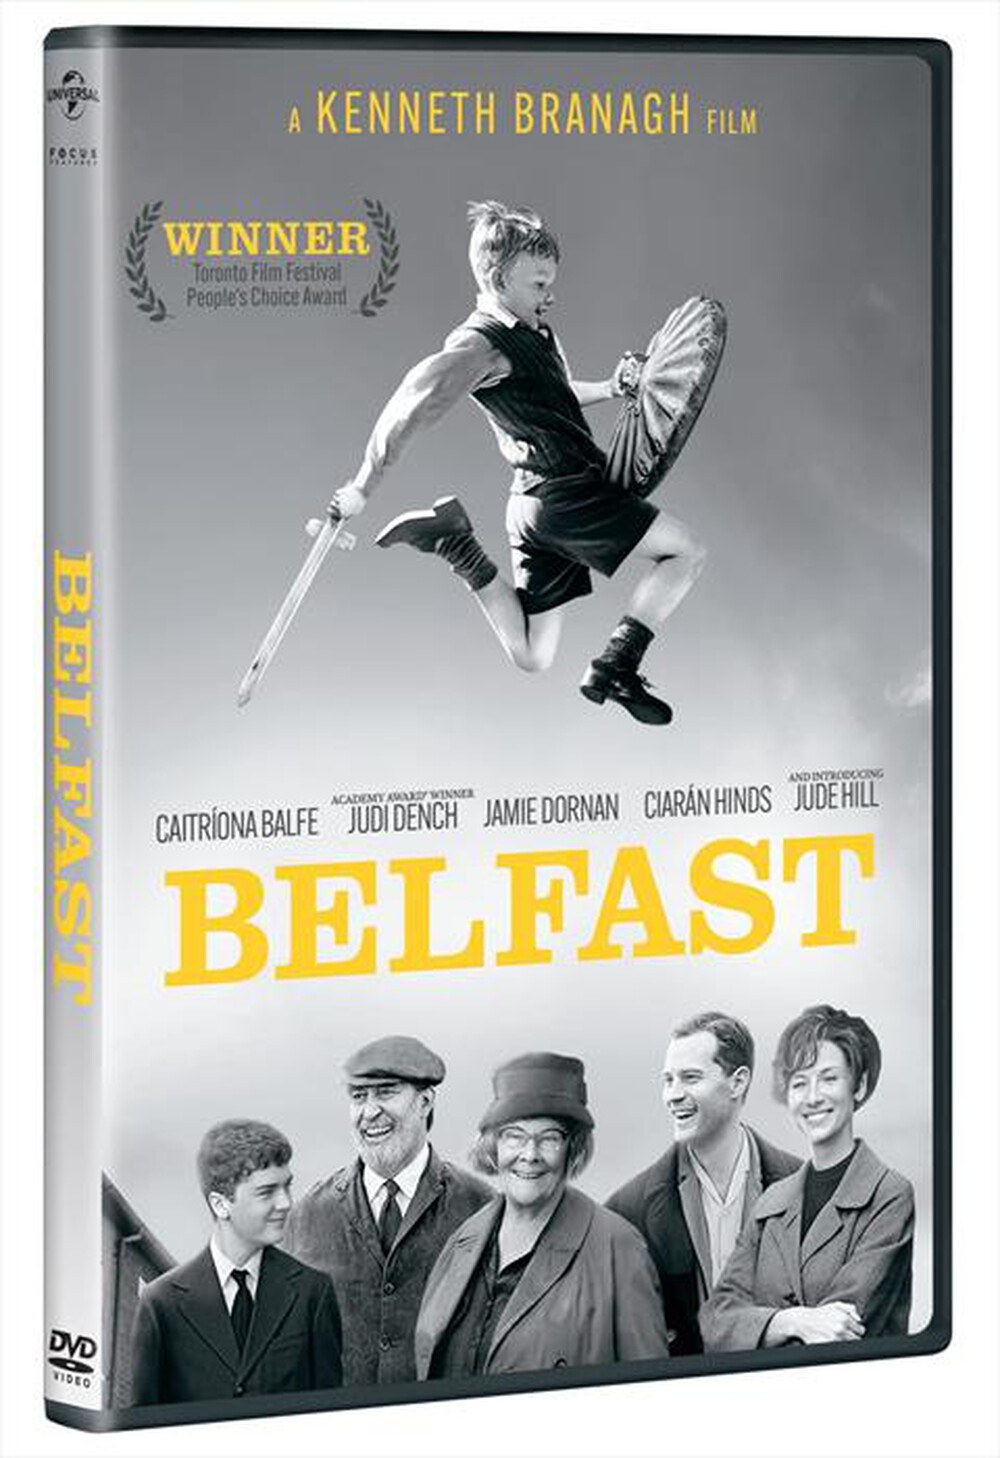 "WARNER HOME VIDEO - Belfast"